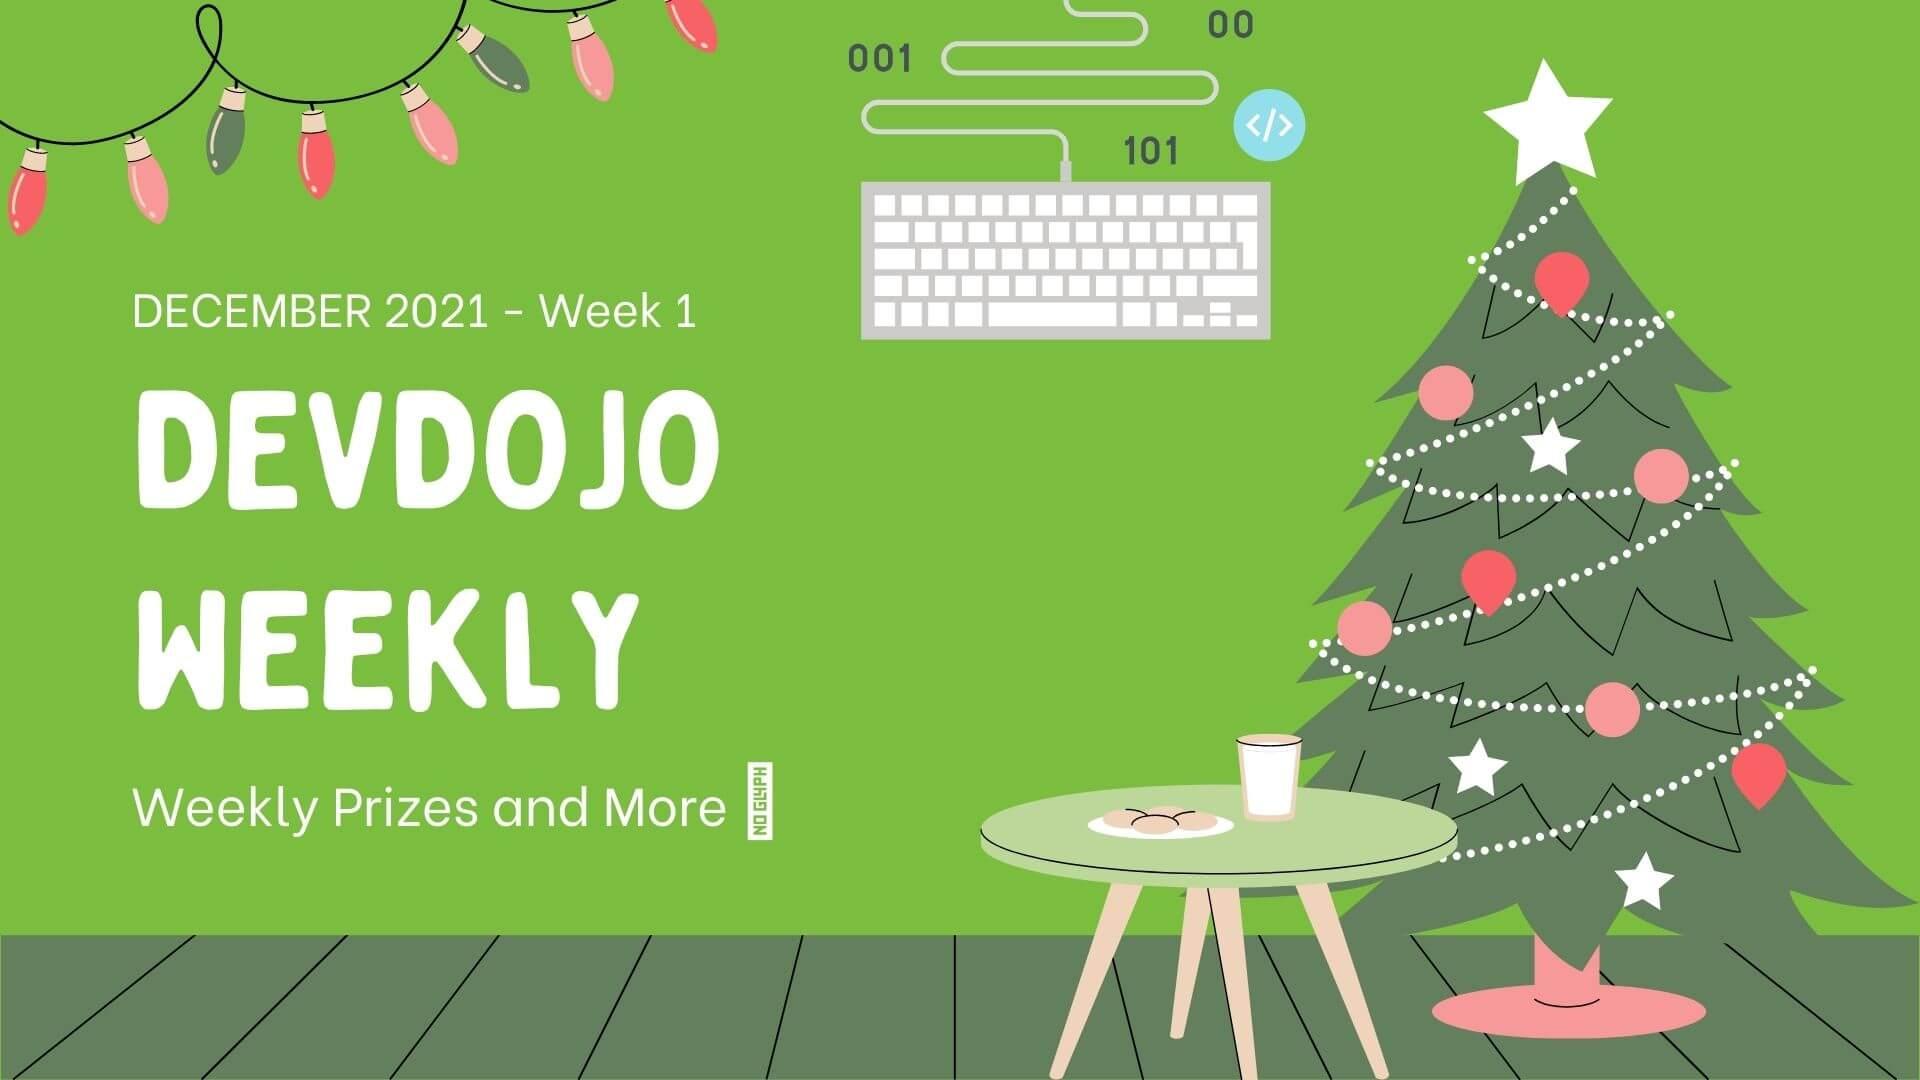 DevDojo Weekly - Dec 2021 - Week 1